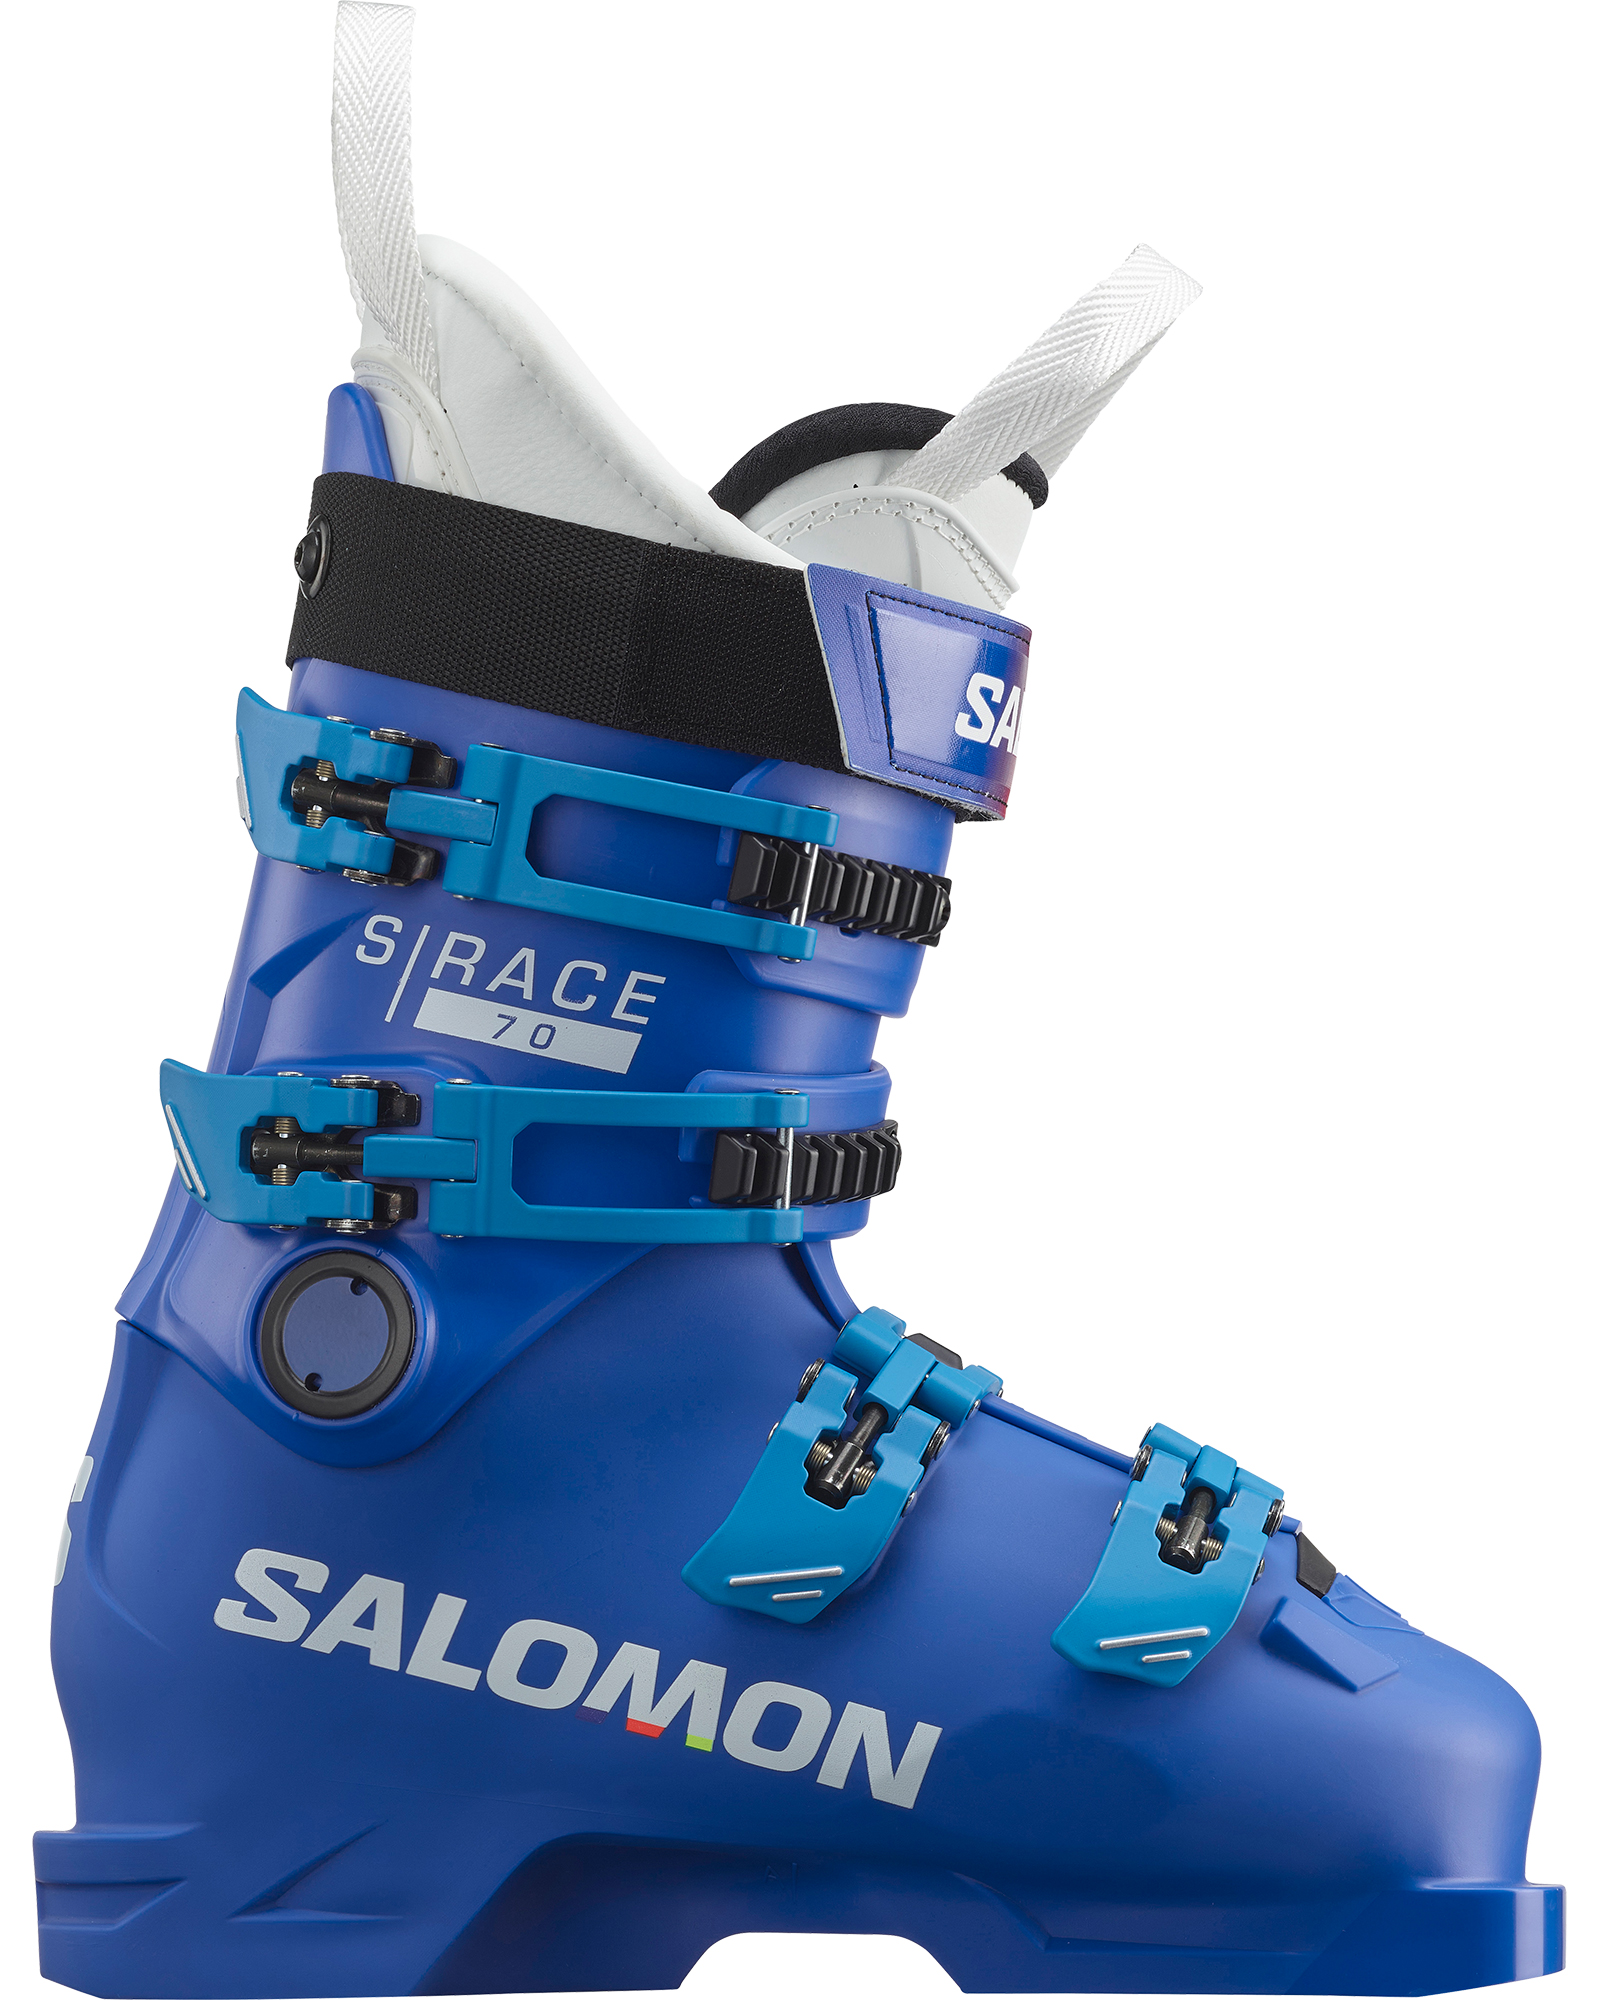 Salomon S/Race 70 - Race Blue /White/Process Blue MP 26.0